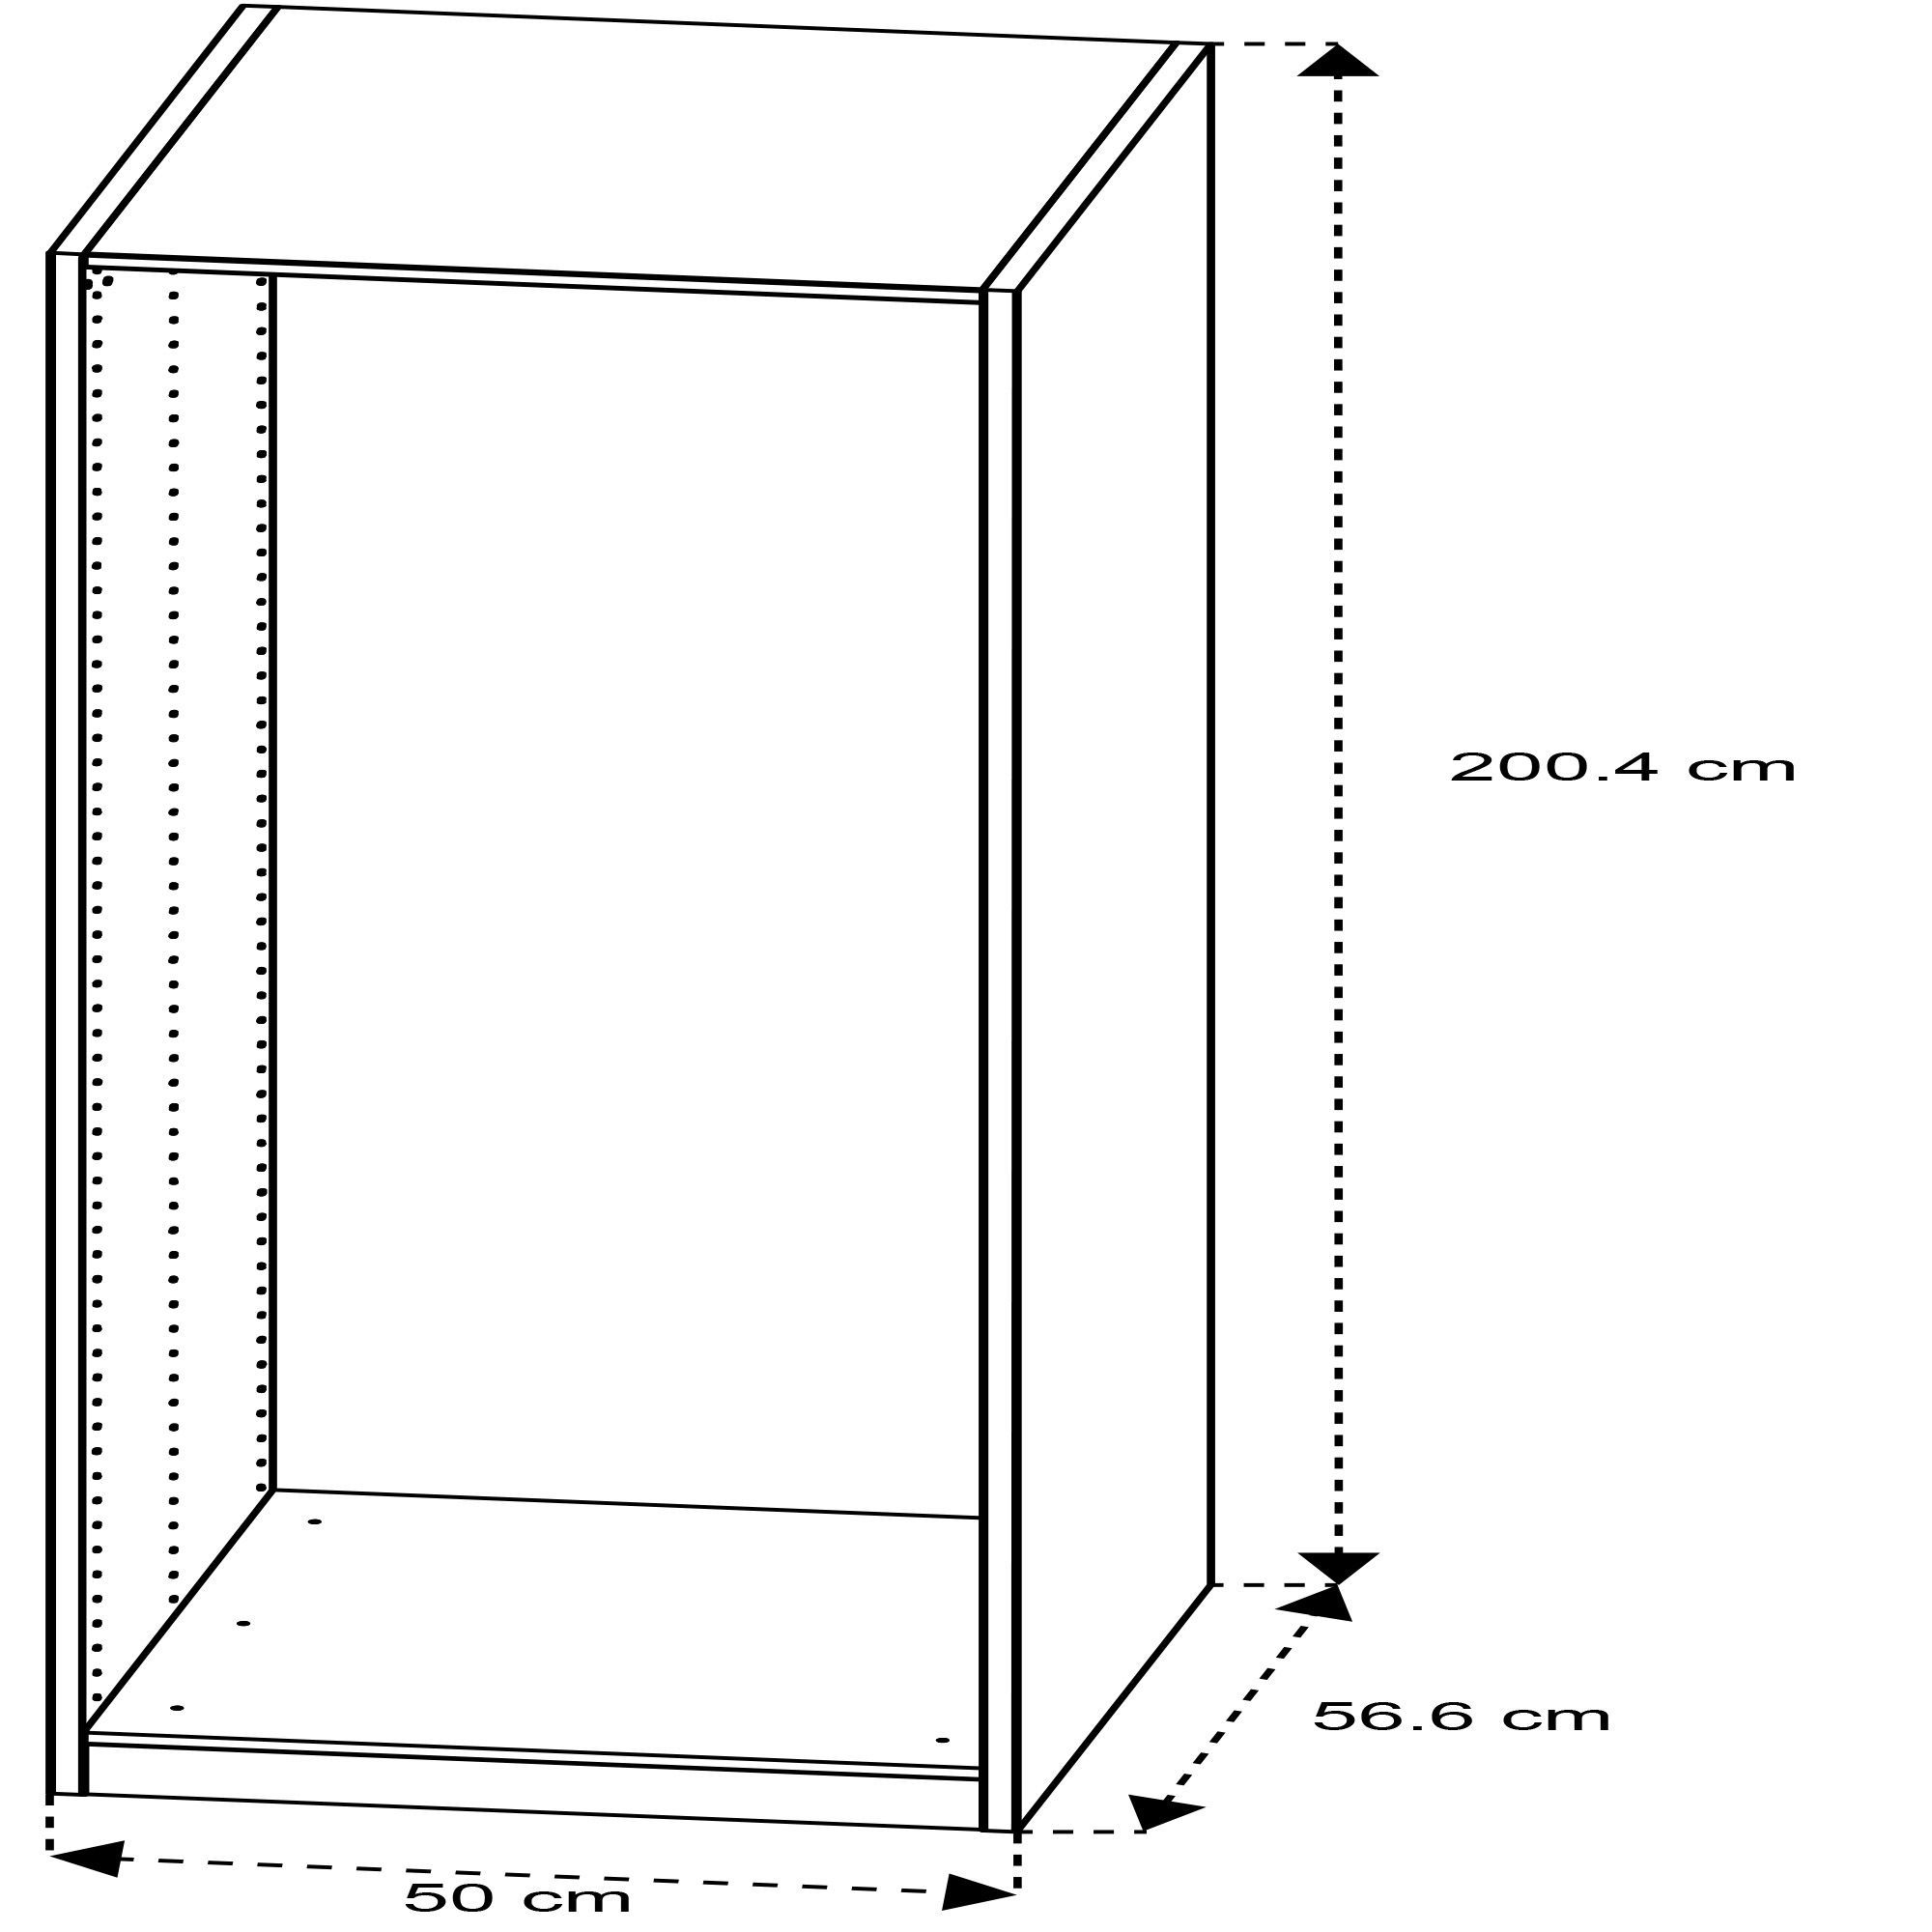 Form Darwin Modular Oak effect Wardrobe cabinet (H)2004mm (W)500mm (D)566mm